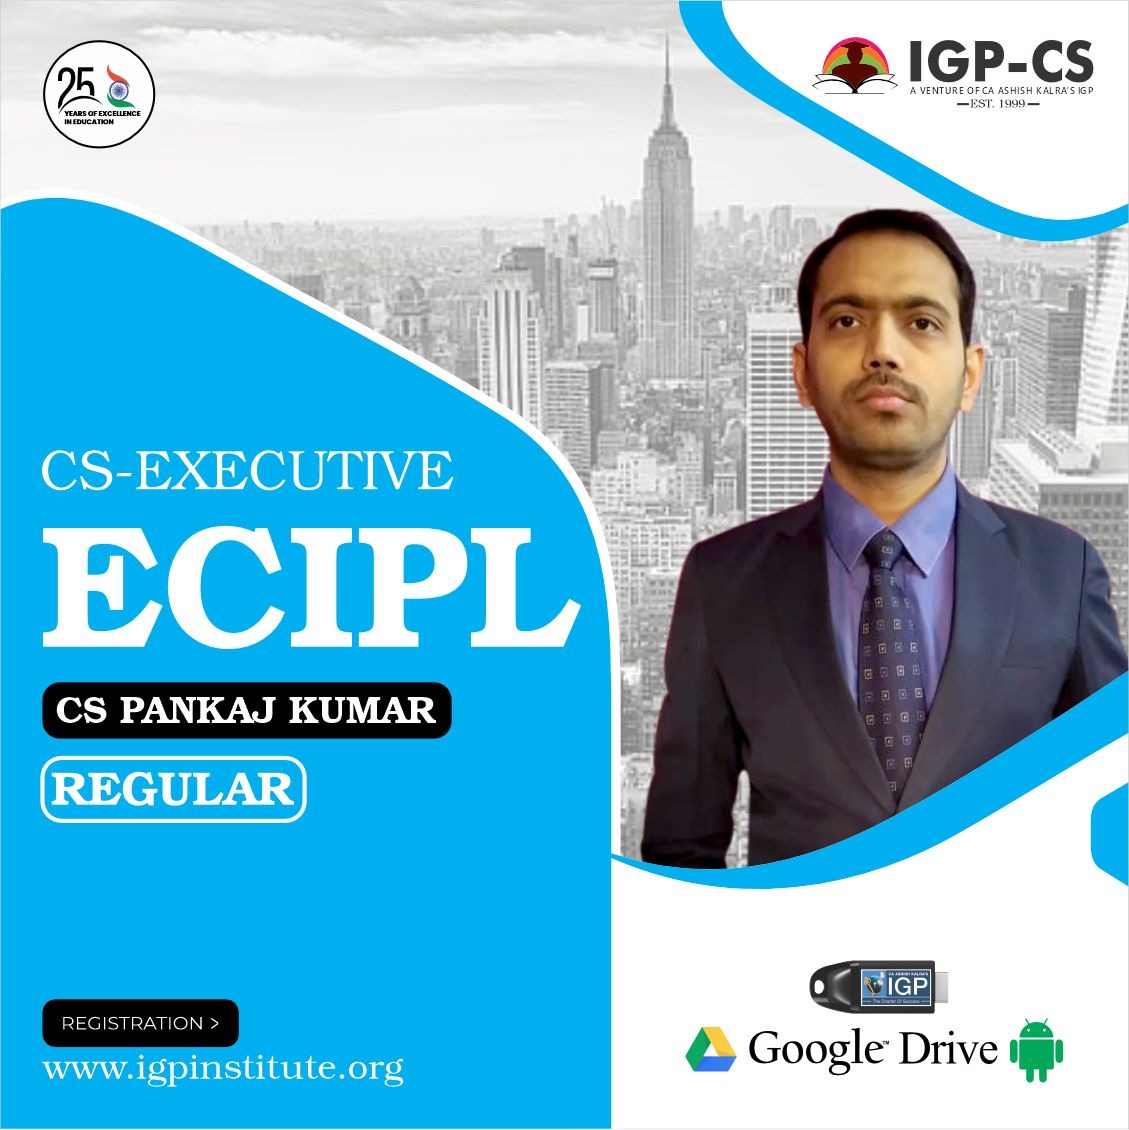 CS -Executive- ECIPL